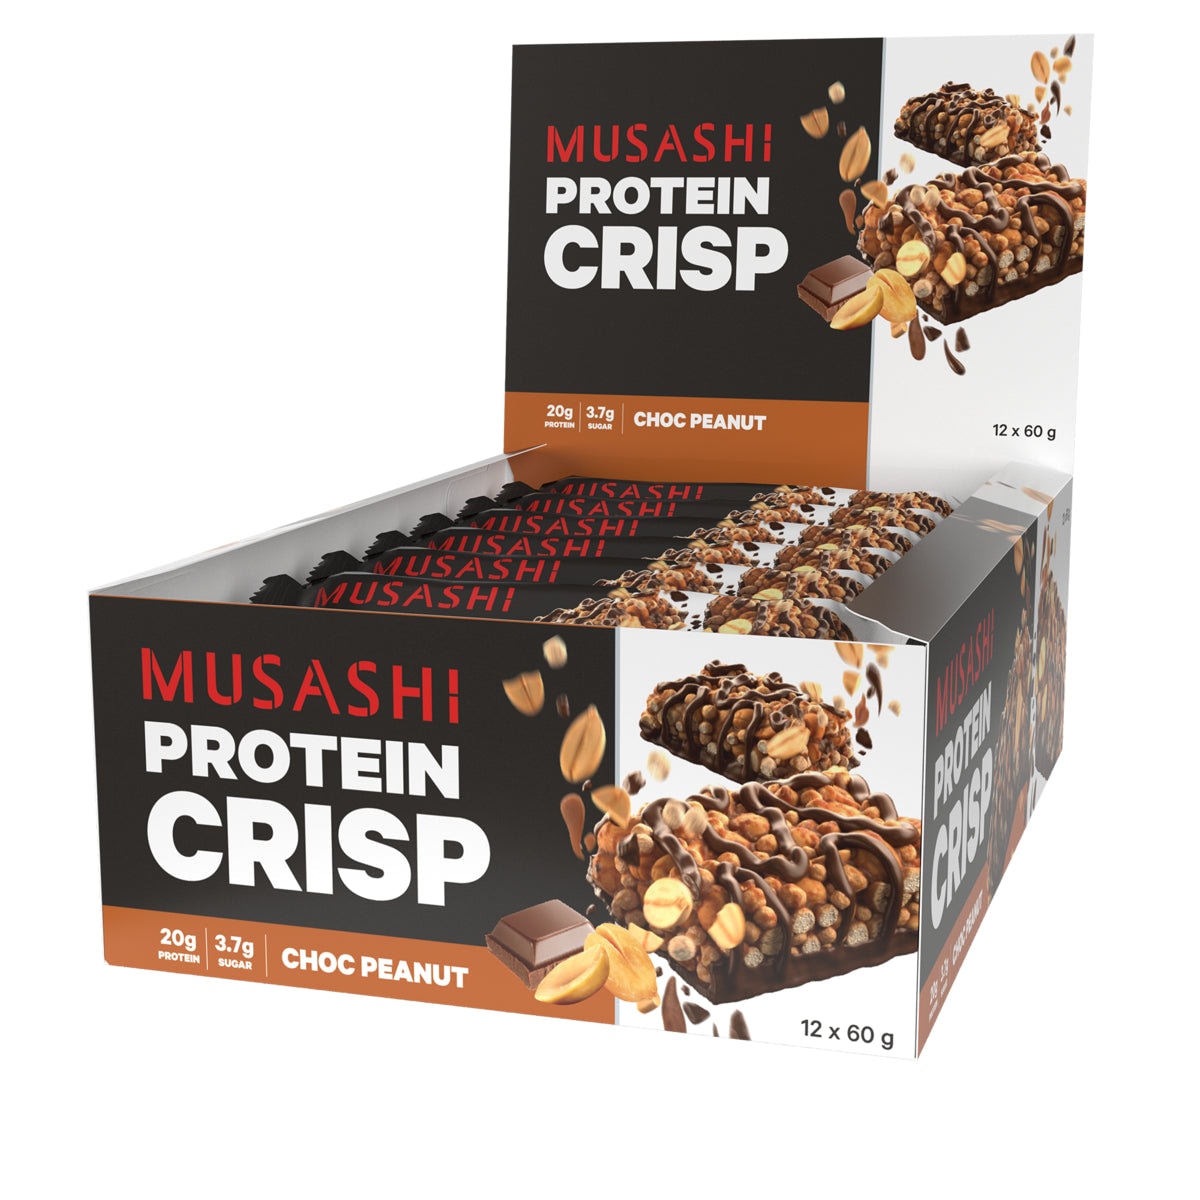 Musashi Choc Peanut Protein Crisp Bar 12 x 60g Musashi